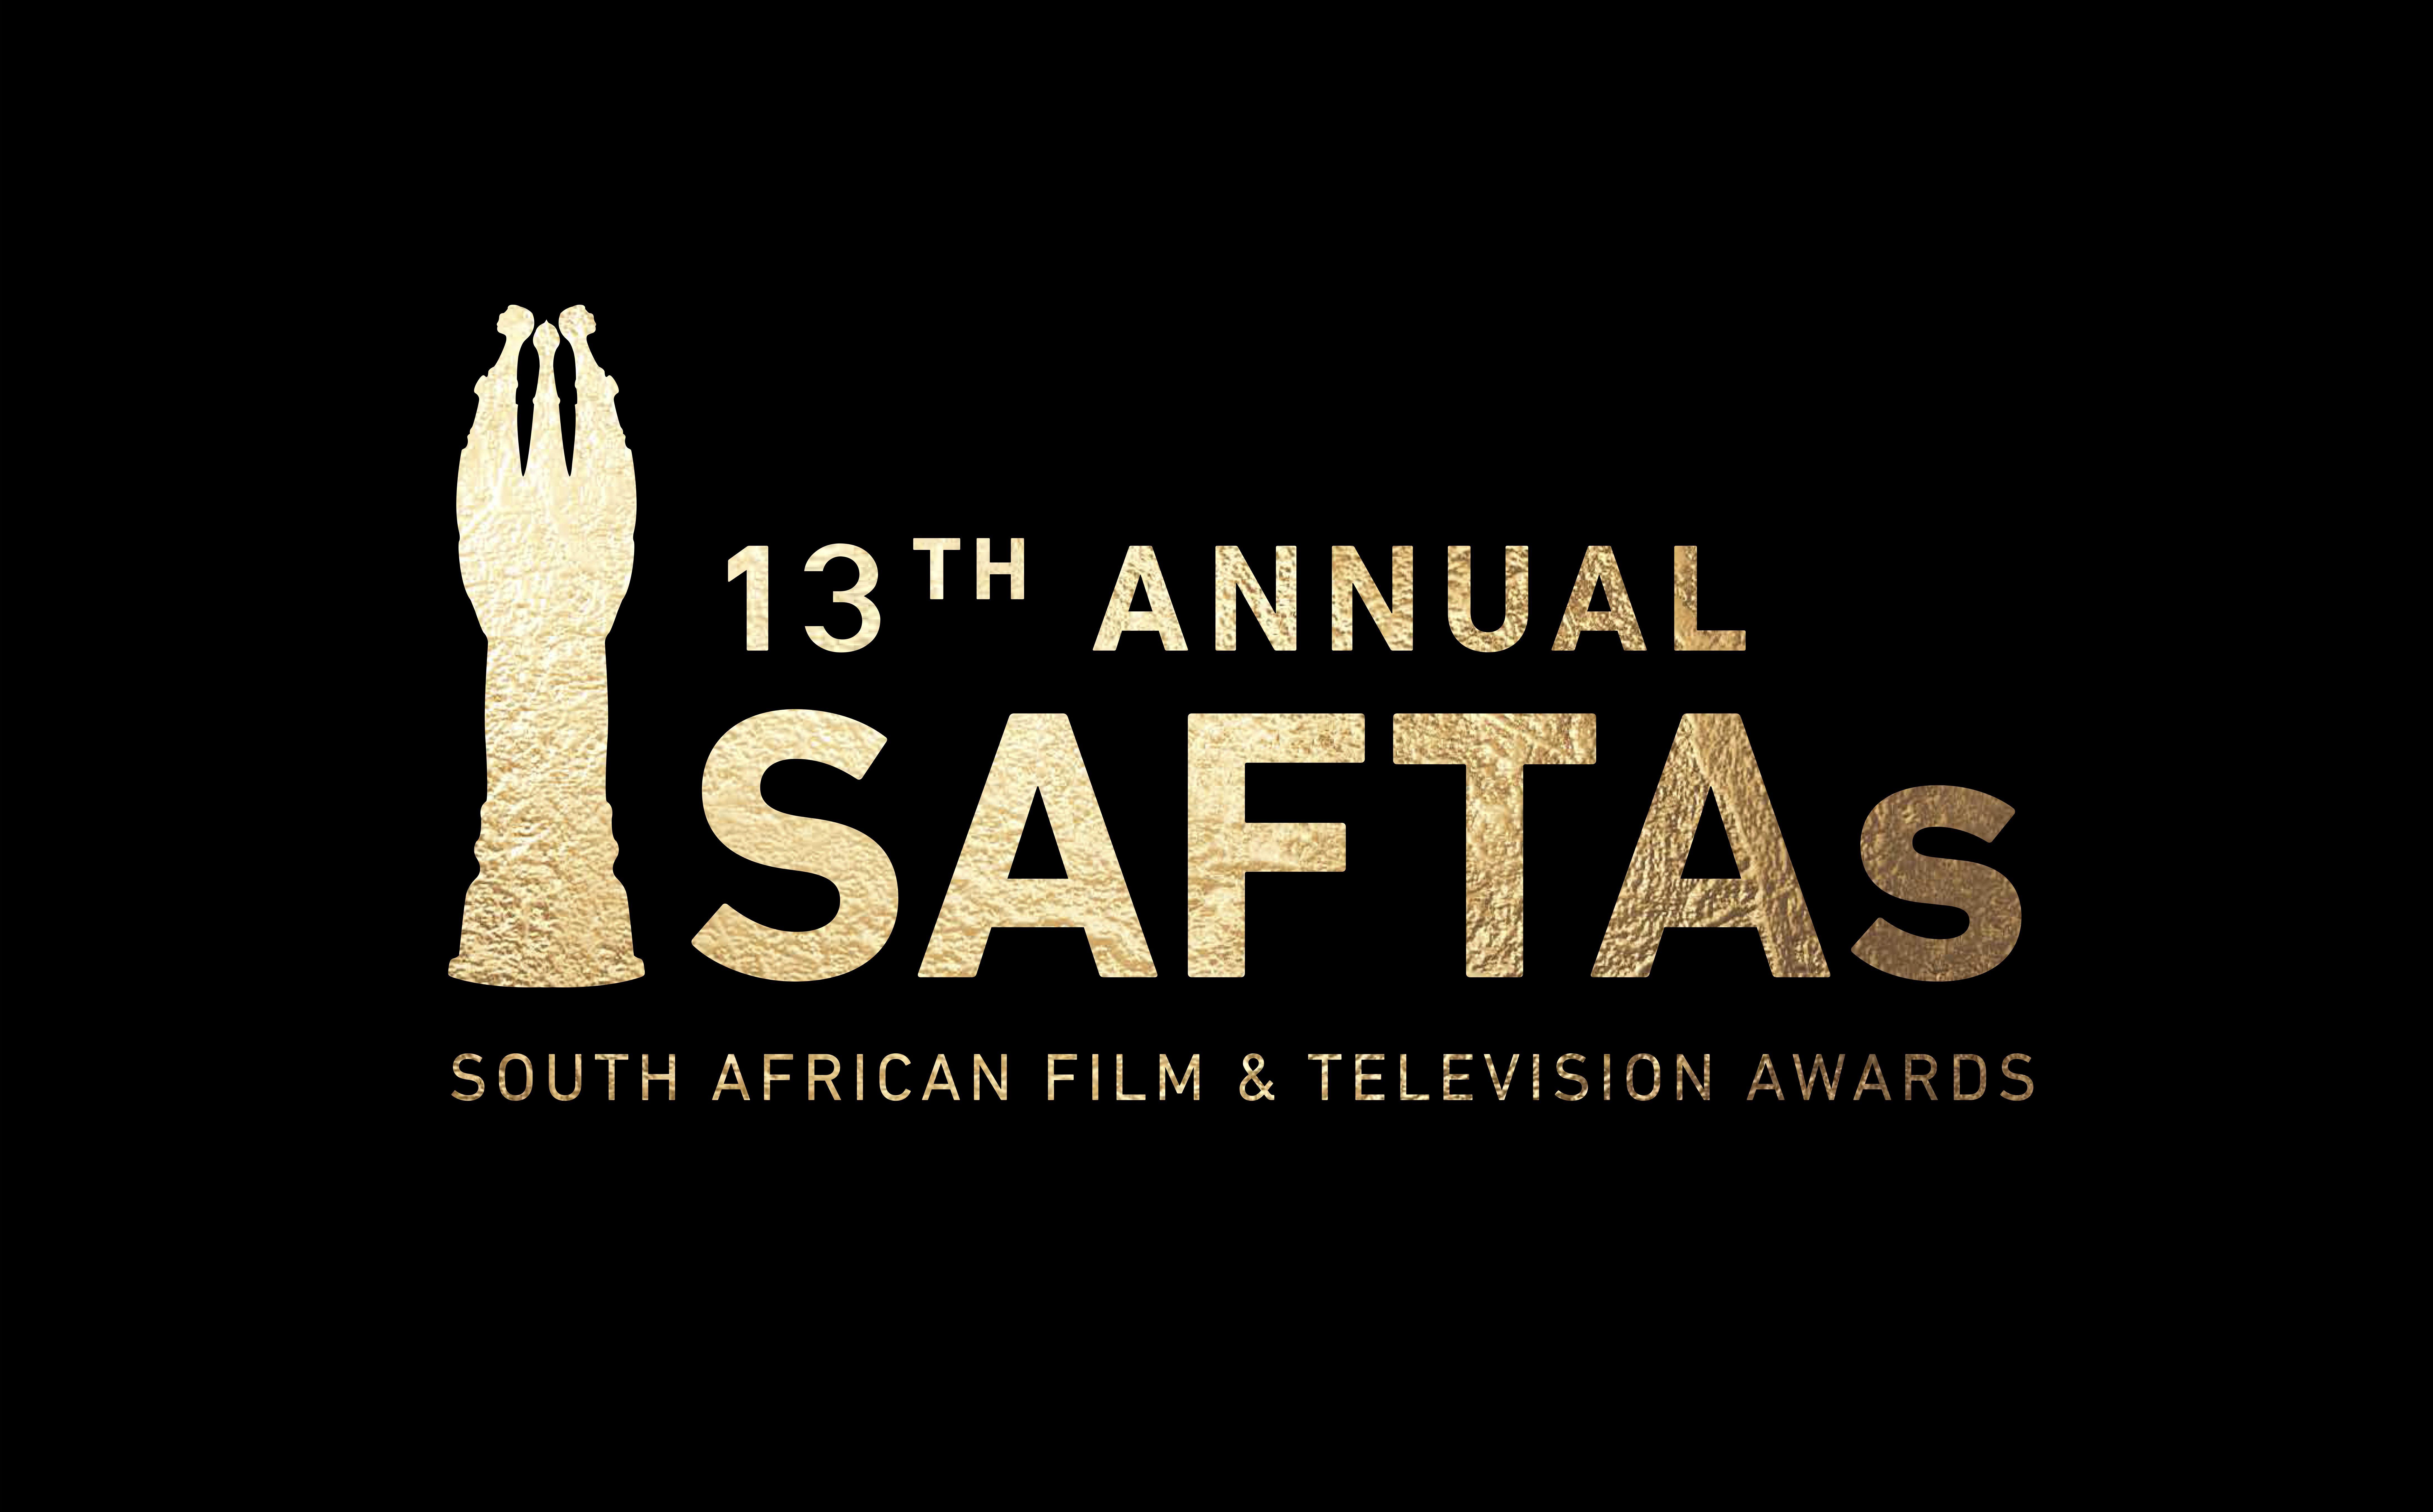 Safta Logo - SAFTAs